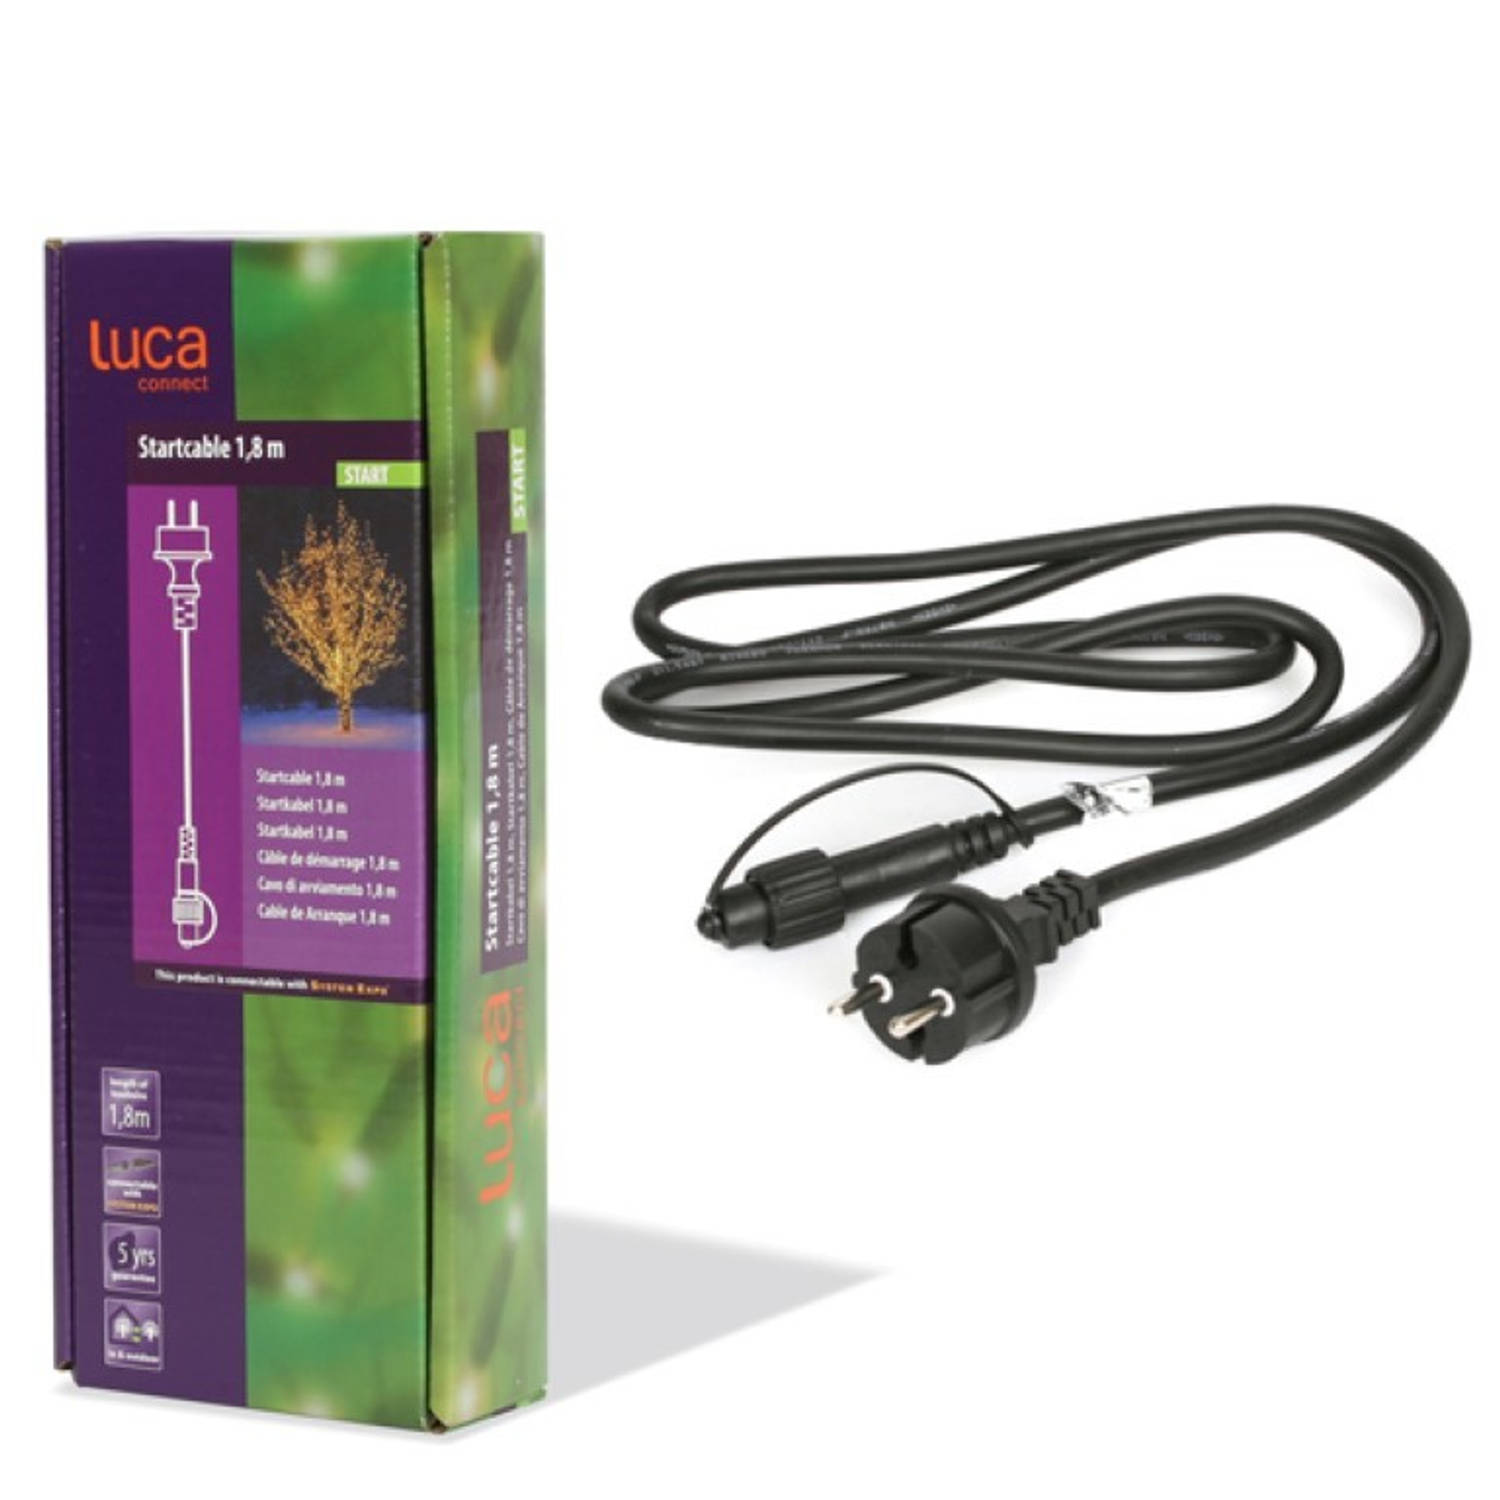 Luca - 3 stuks Koppelverlichting Kerstverlichting Kabel 180 cm xp zwart start 24 volt XP serie